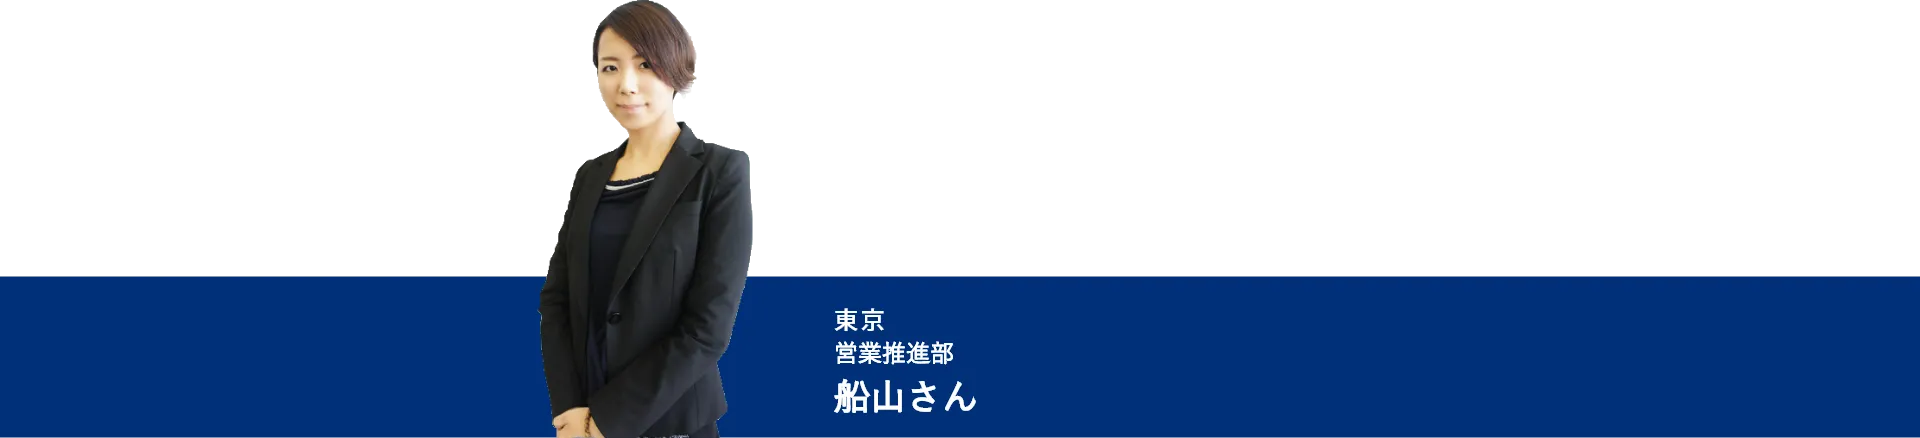 日本製図器工業_リクルートサイト_営業推進部